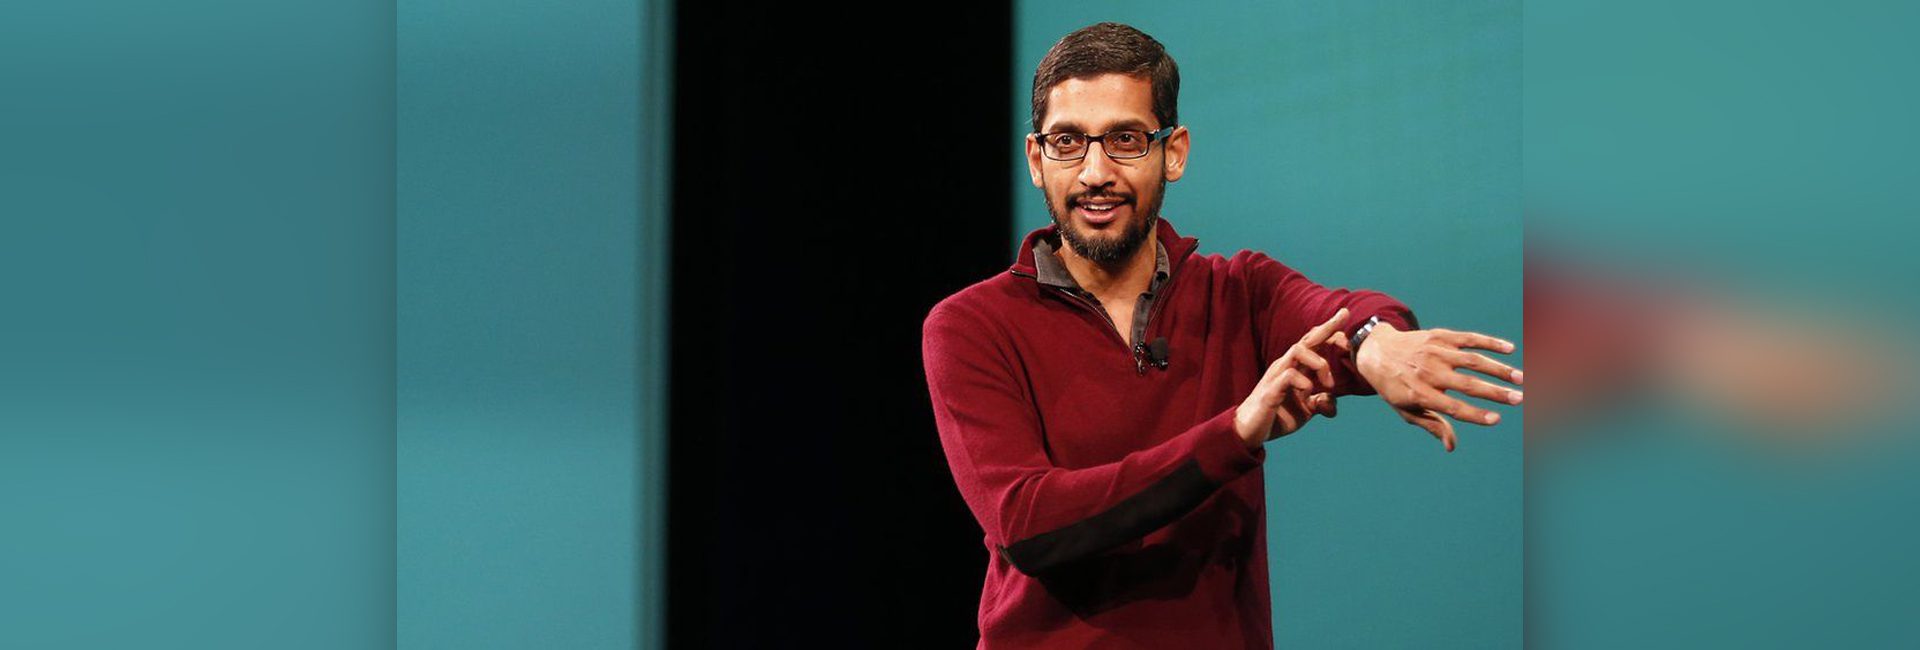 الرئيس التنفيذي لشركة Google من أصل هندي ، سوندار بيتشاي ، يستقبل بادما بوشان